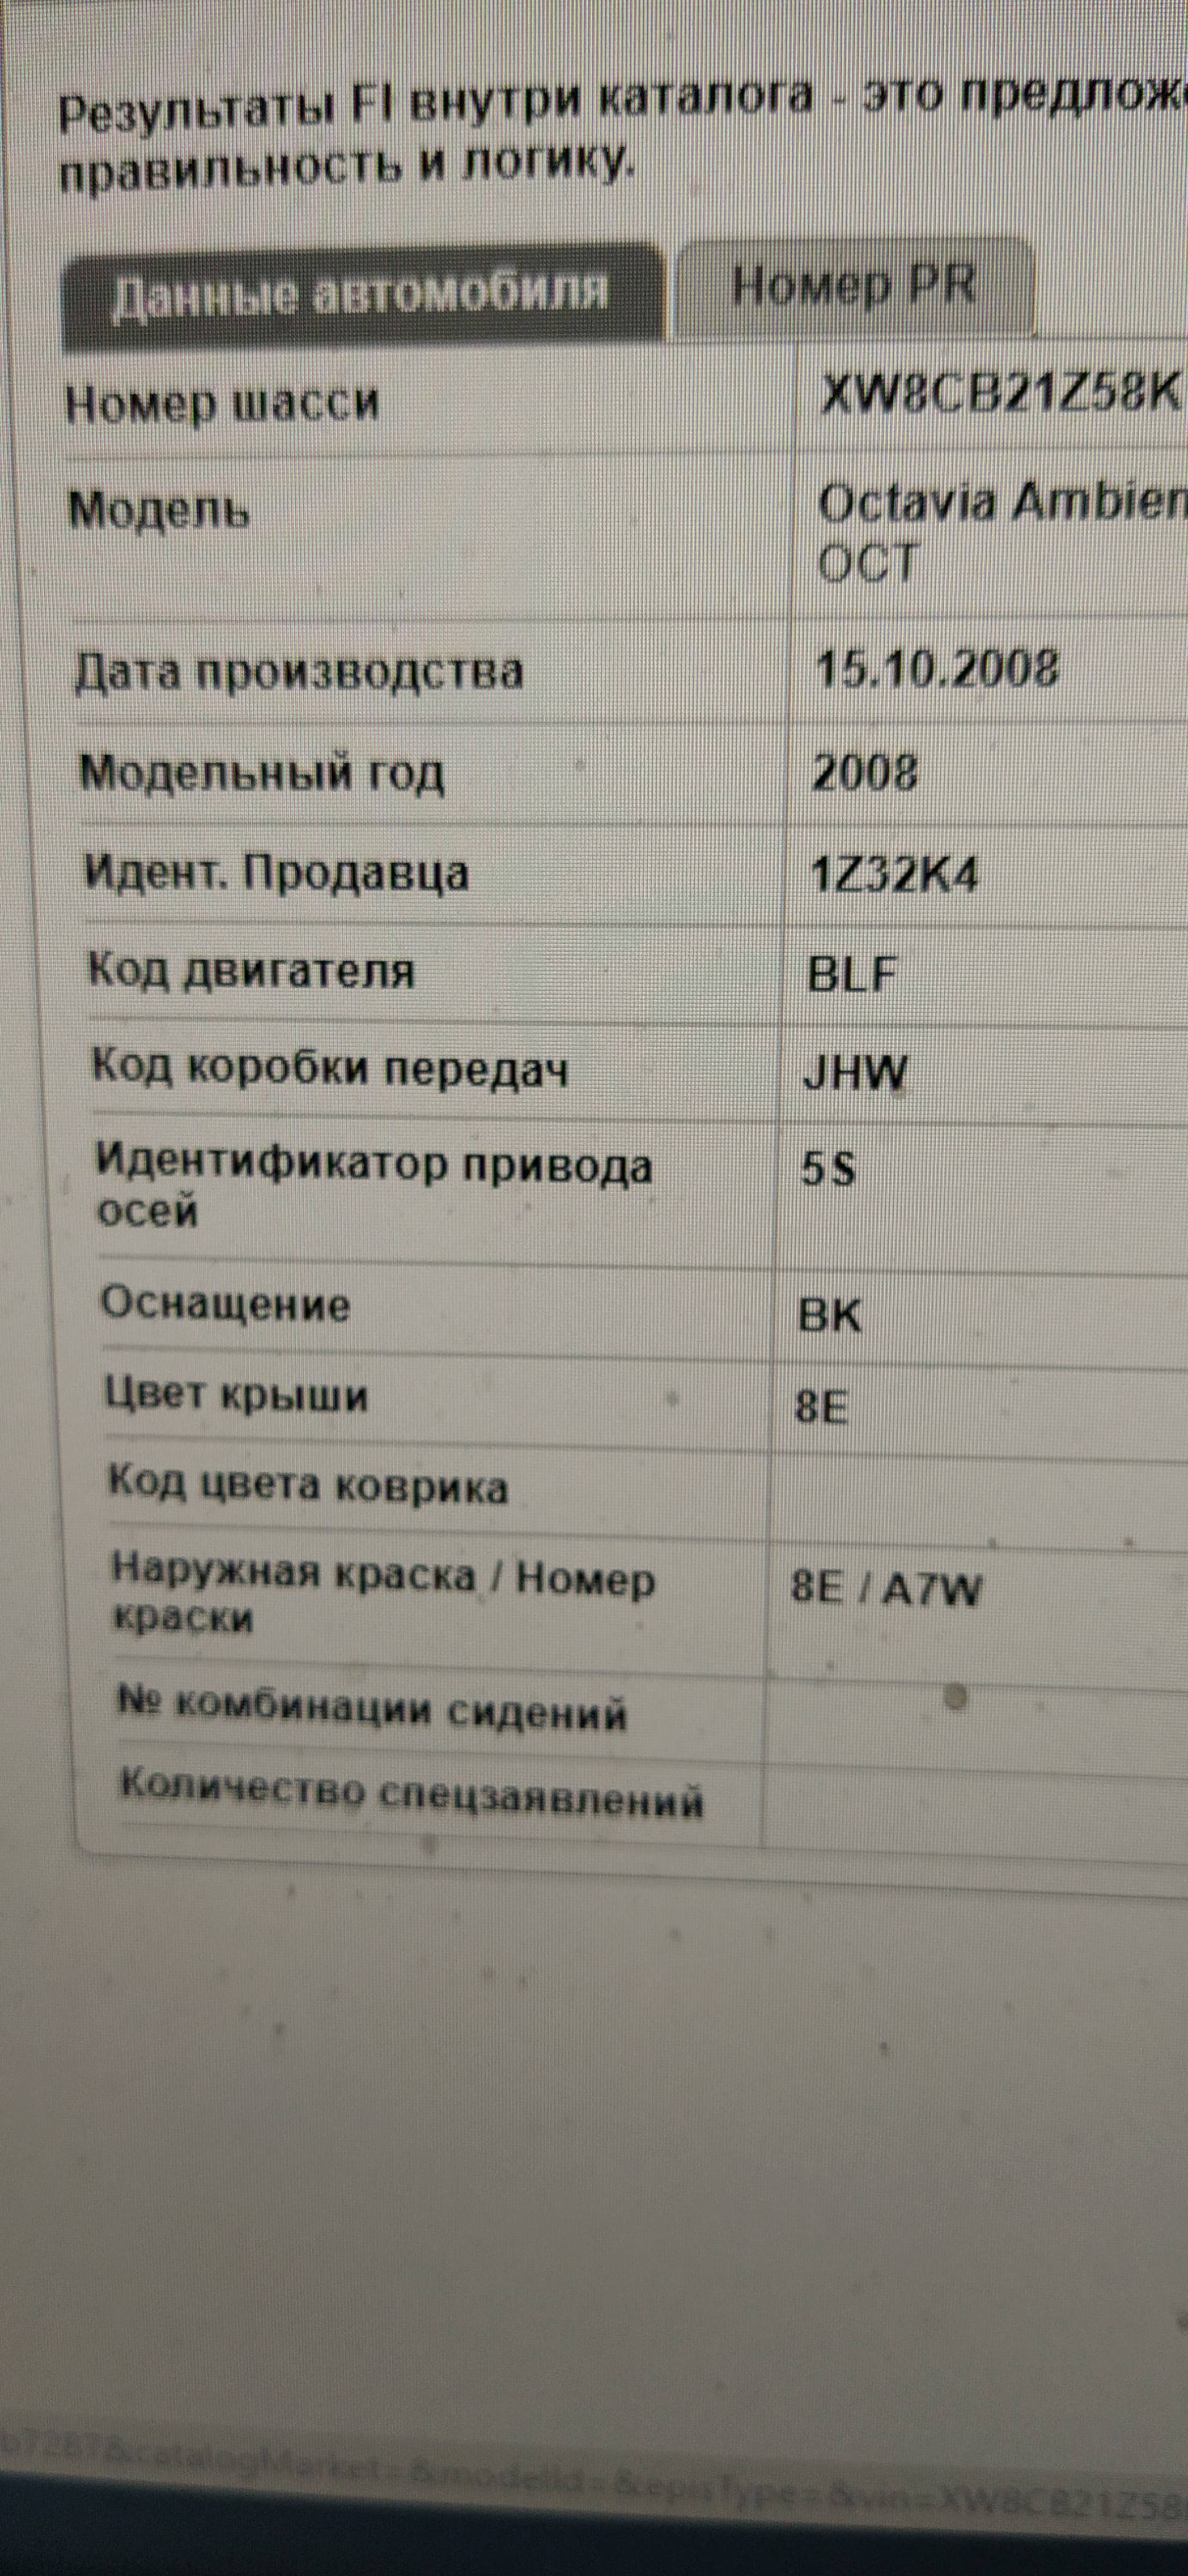 0AF_JHW Novozhilov 23042020 (1)